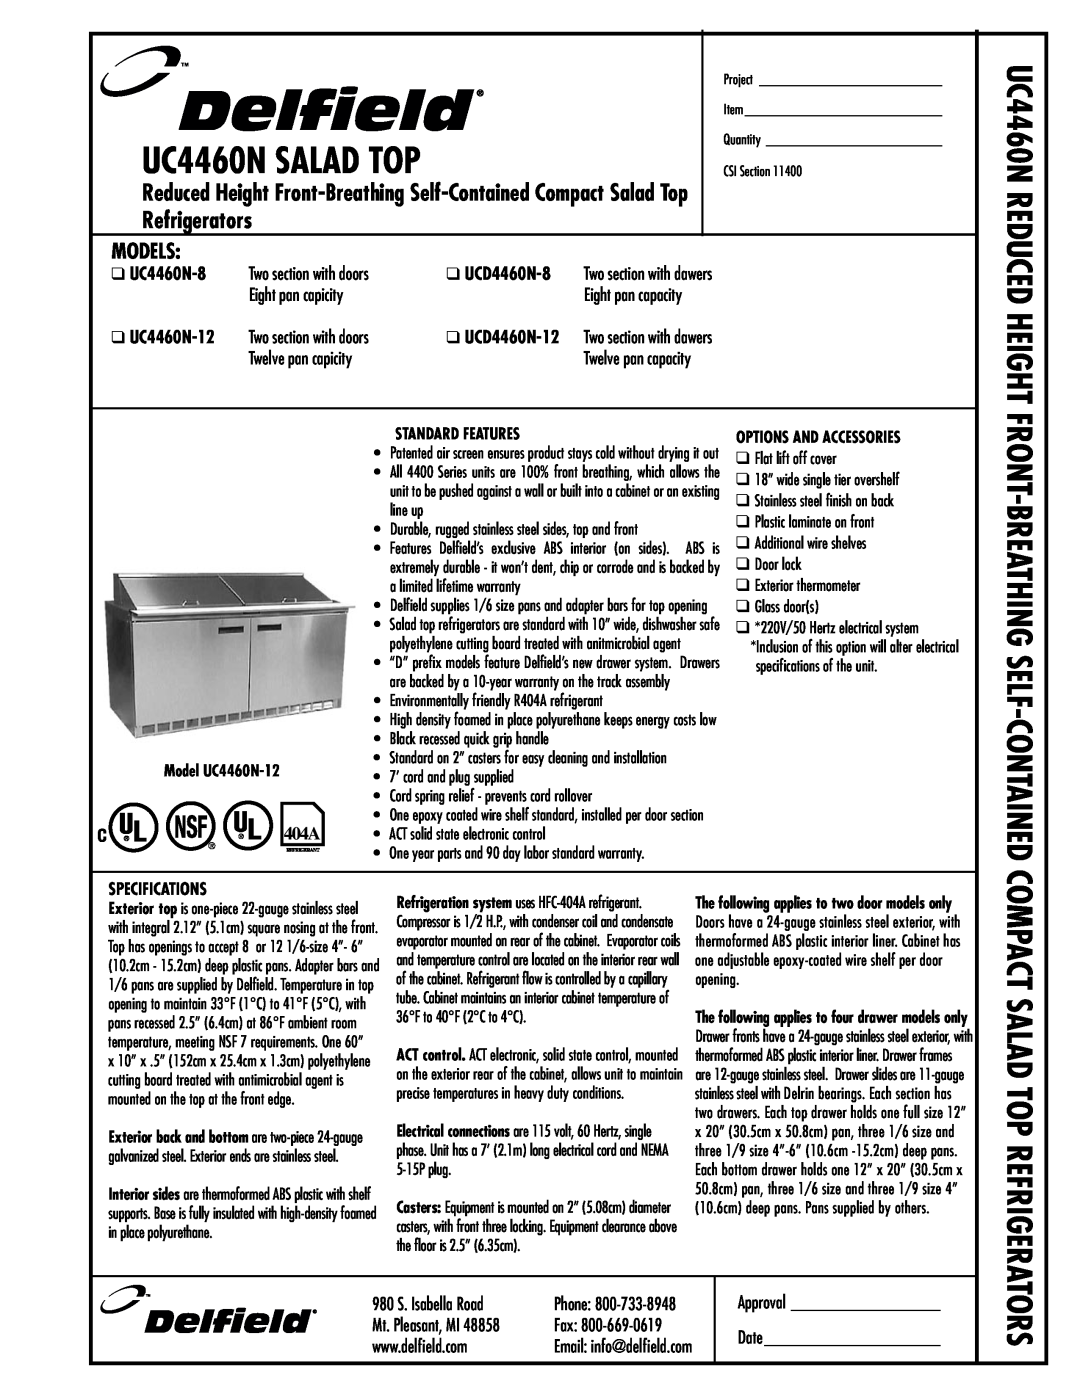 Delfield UCD4460N-12 manual Models, Reduced Height, Compact Salad Top Refrigerators,  UC4460N-8,  UCD4460N-8, Phone 